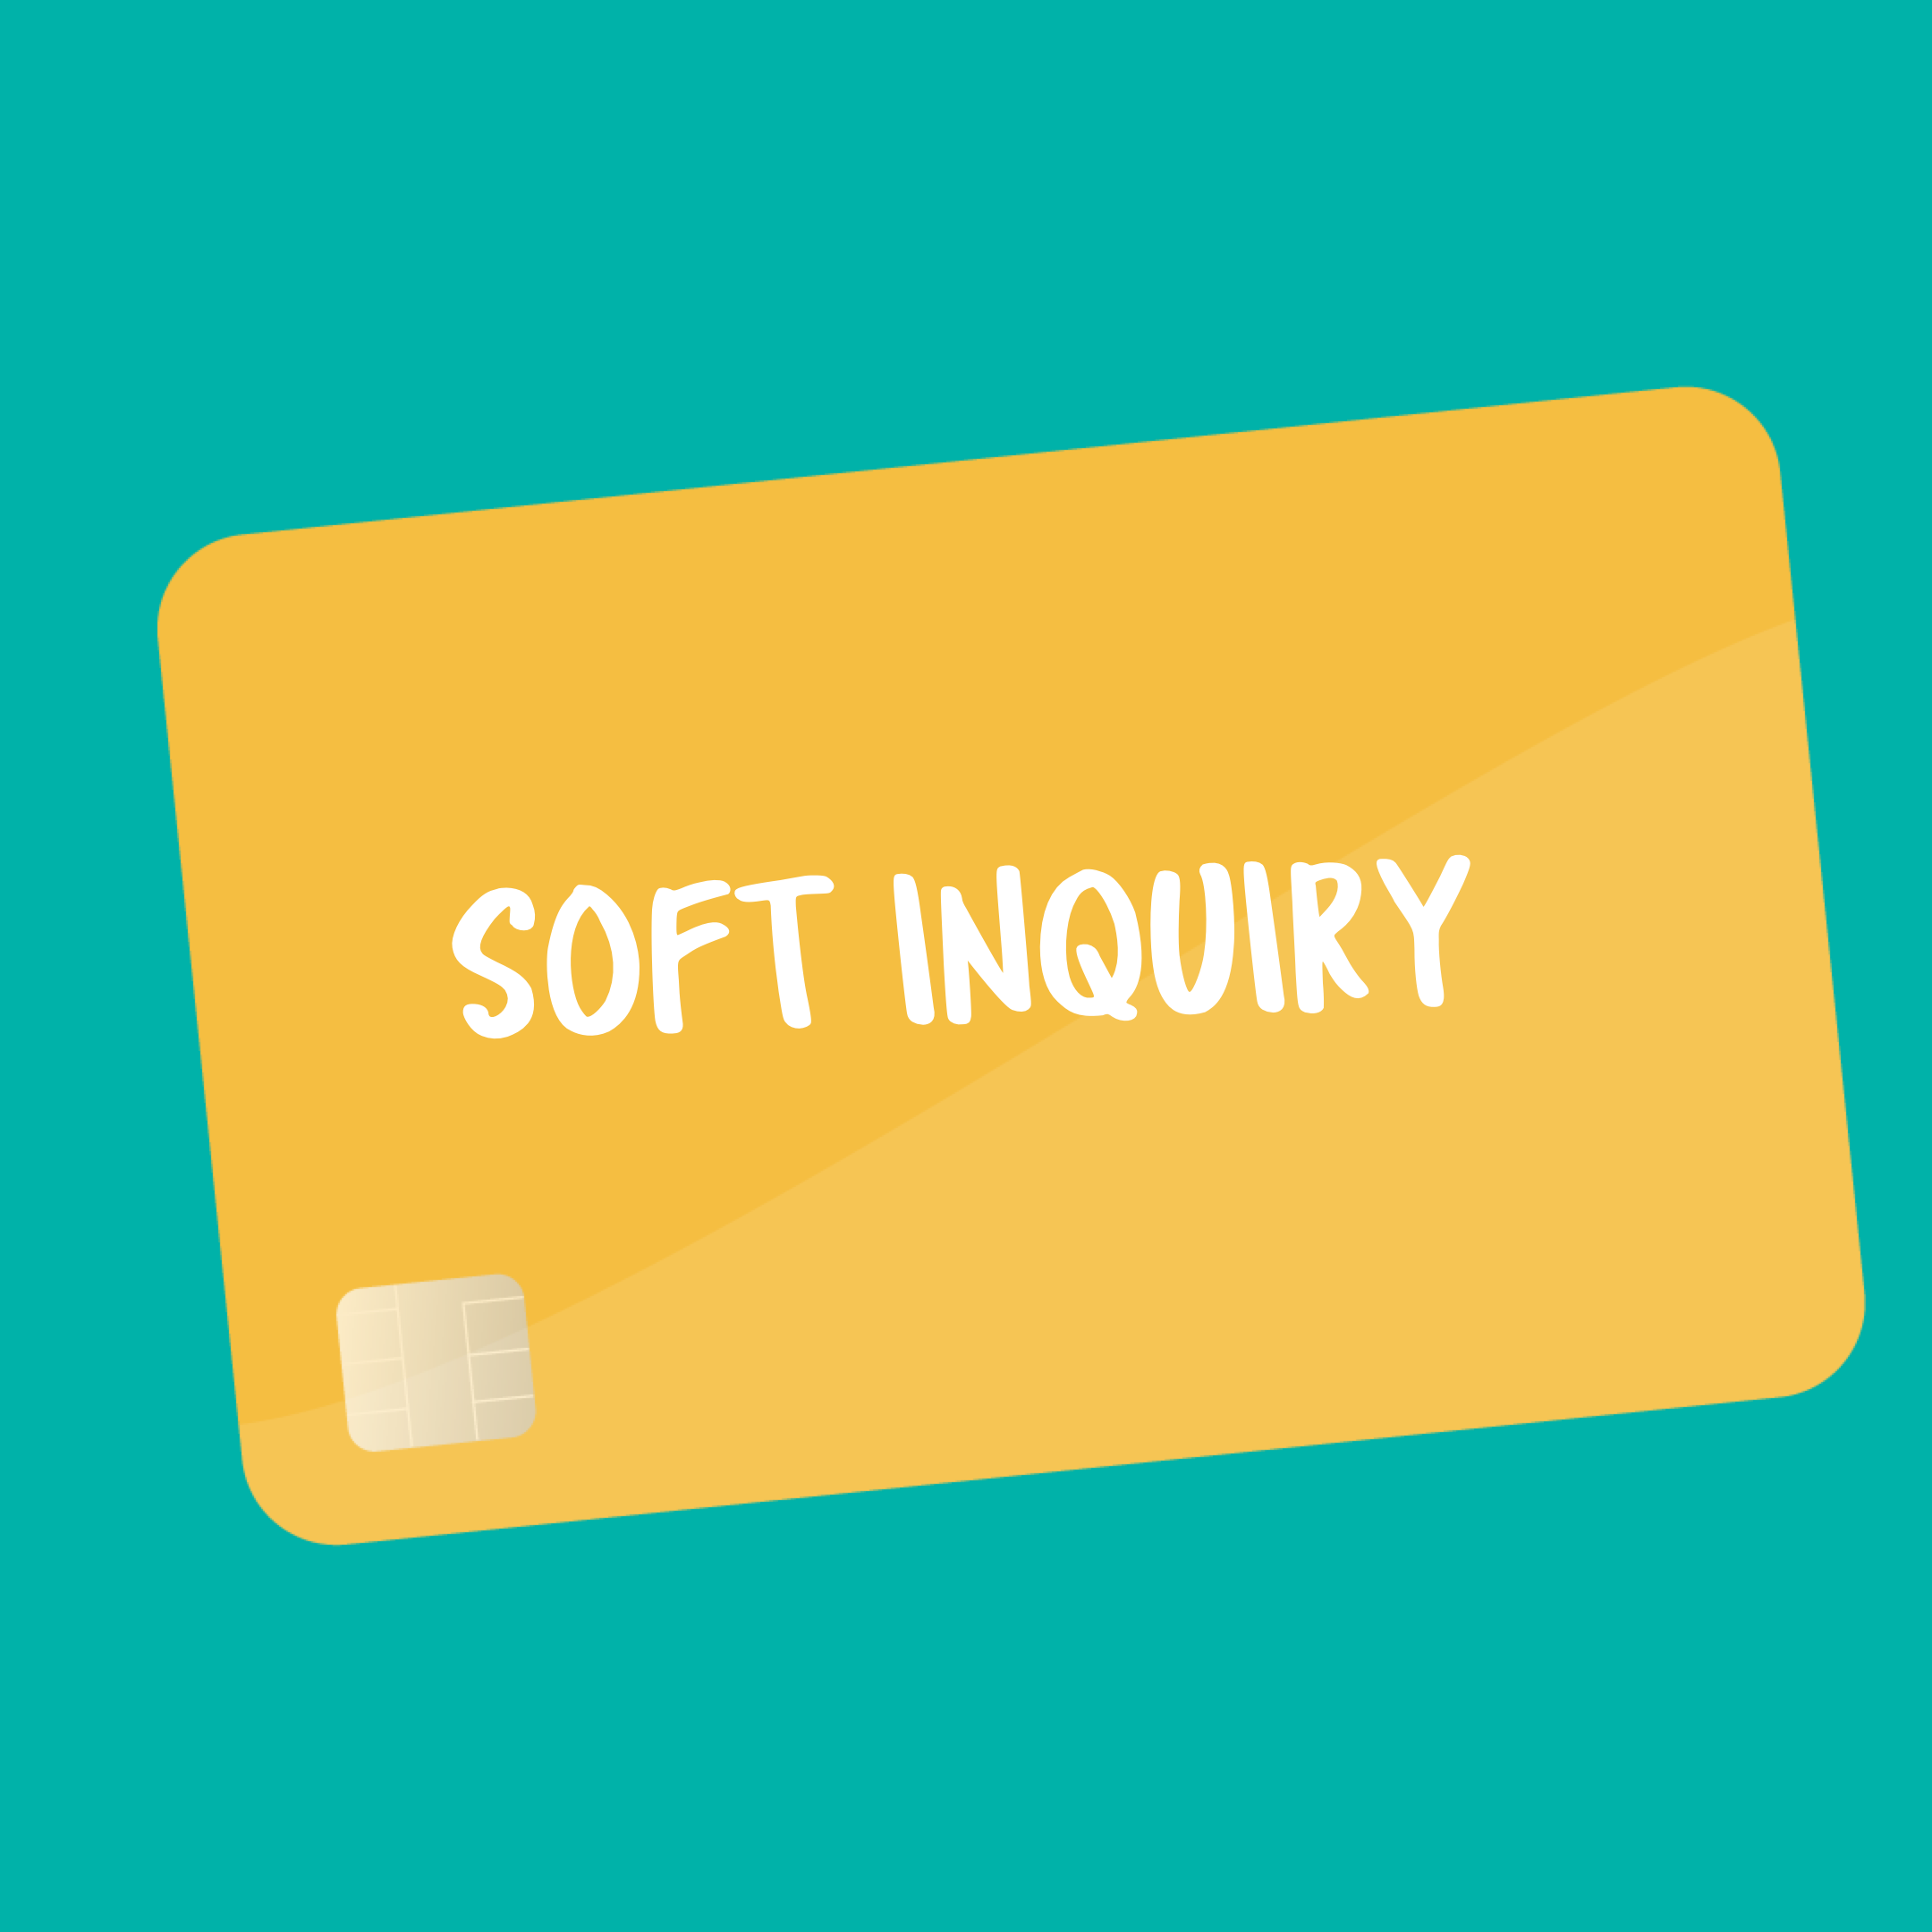 Soft Inquiry flashcard